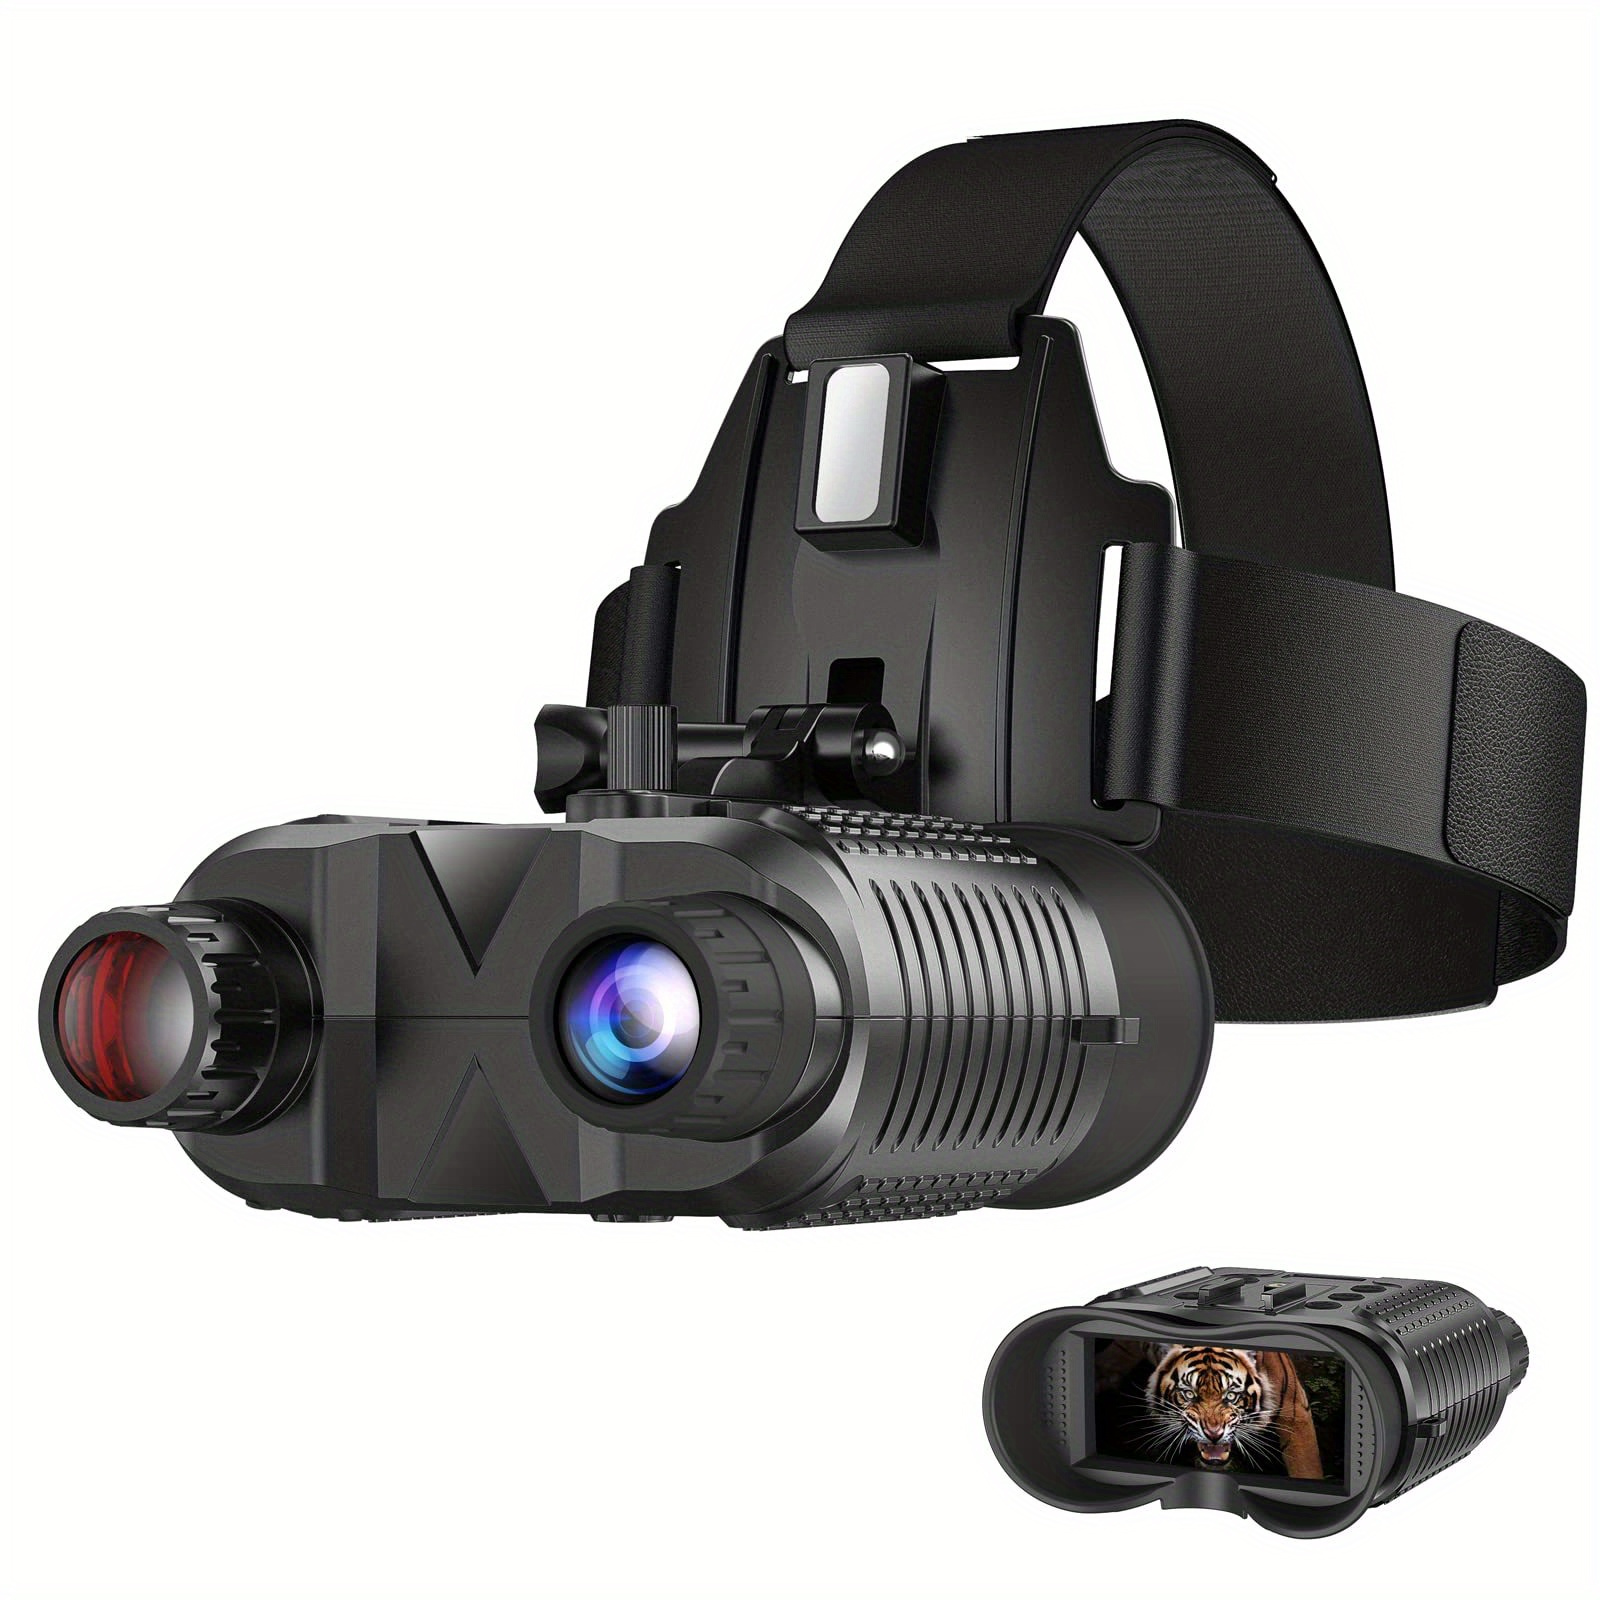 Gafas de visión nocturna digitales binoculares visión nocturna infrarroja  con pantalla de visualización de 3 pulgadas para oscuridad